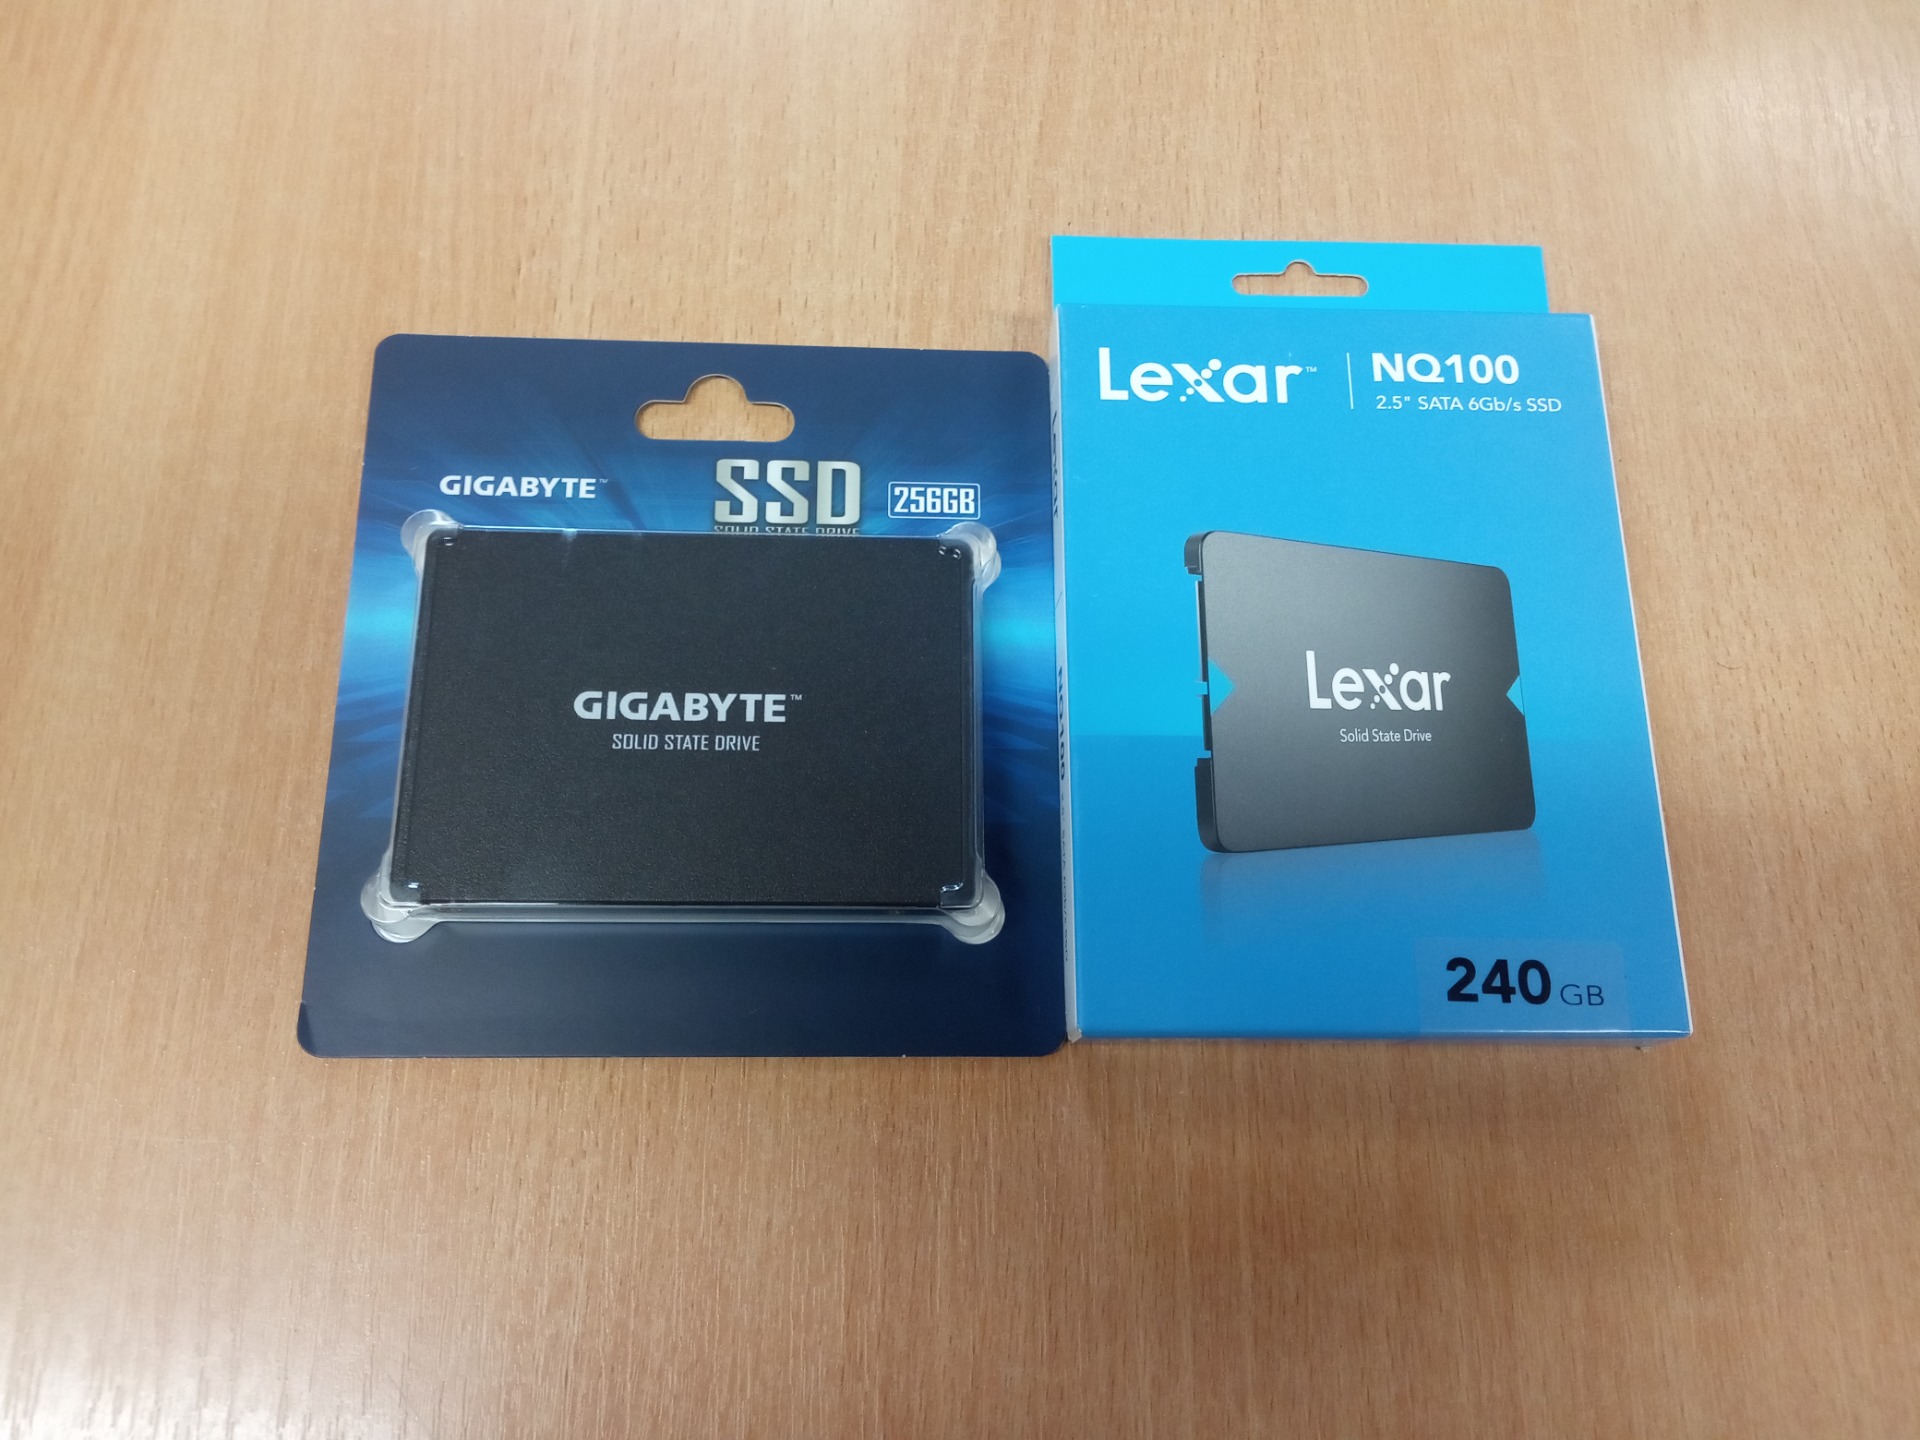 Dyski SSD zakupione przez Climatic Sp. z o.o. Sp. k. dla ZSZMSC